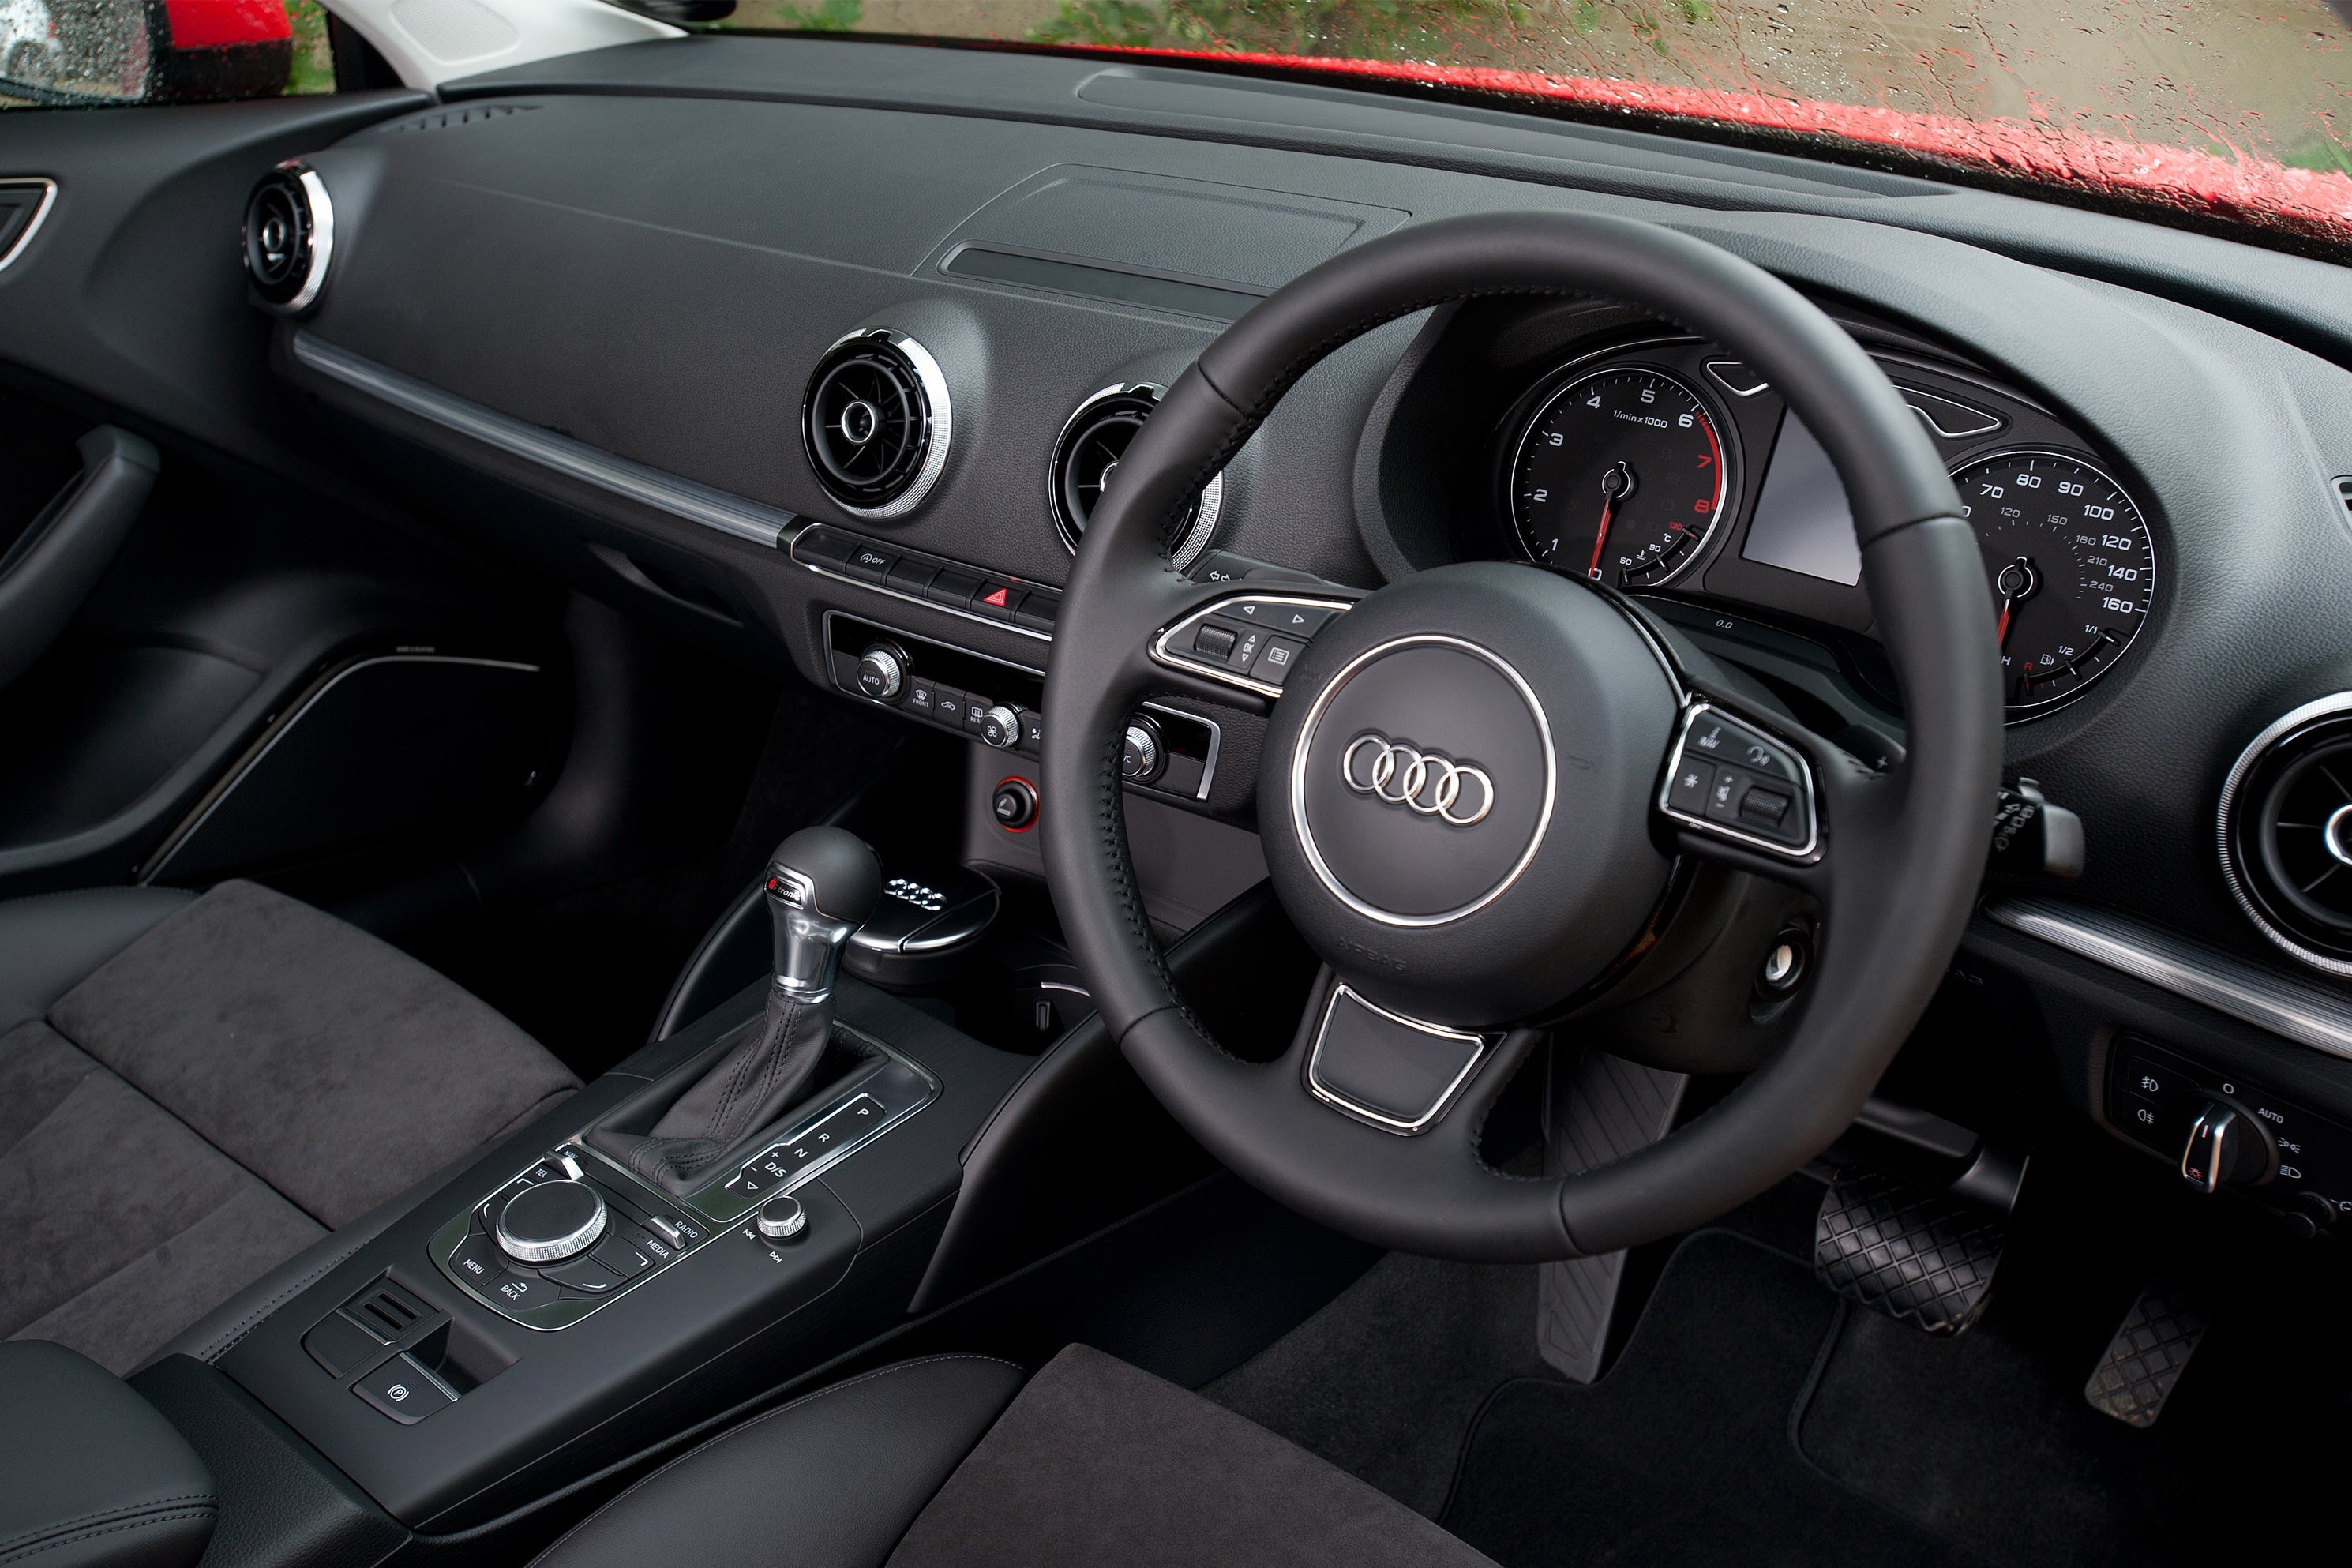 Audi A3 common problems (2012-2020)